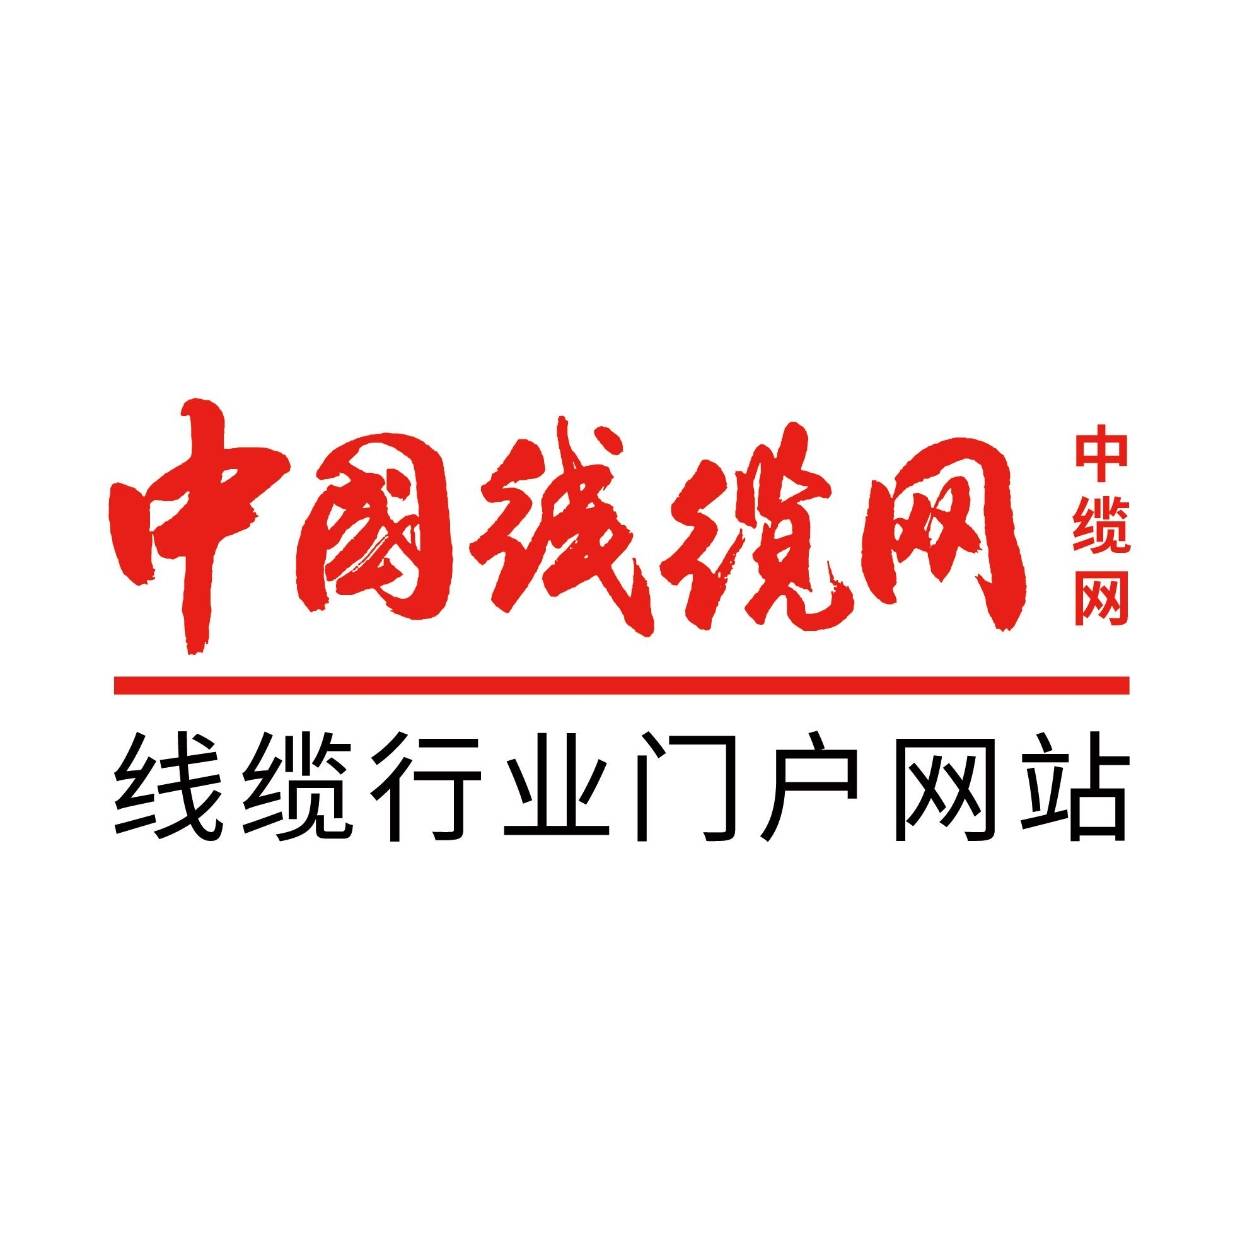 中国广电5G首席战略官徐达：携手产业界助力数字经济新发展 | DVBCN